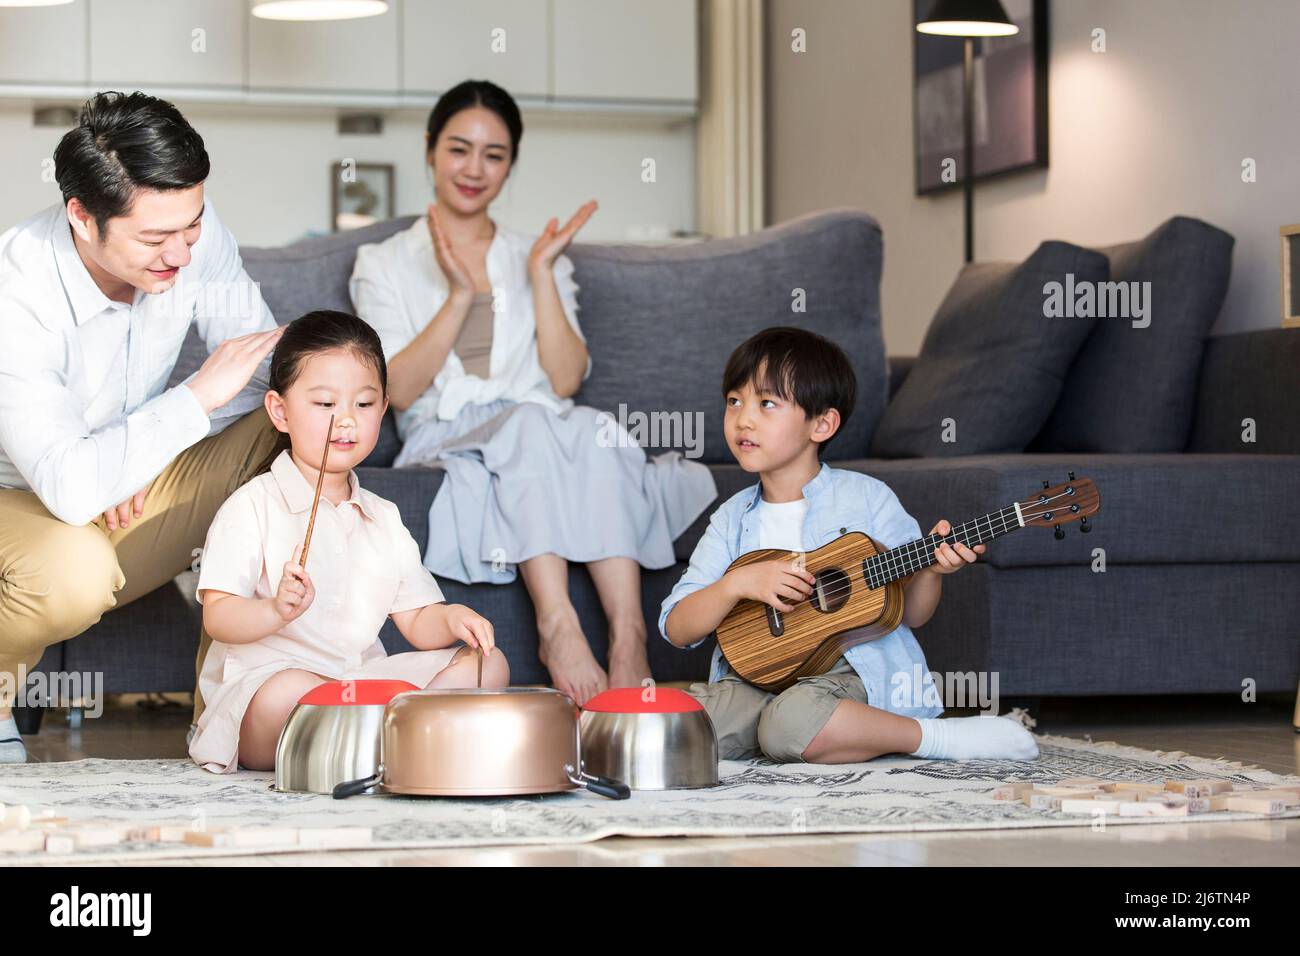 Un ragazzo e una ragazza si siedono sul tappeto giocando mischievously su ukulele e utensili da cucina, mentre i genitori guardano in ammirazione felice - foto di scorta Foto Stock